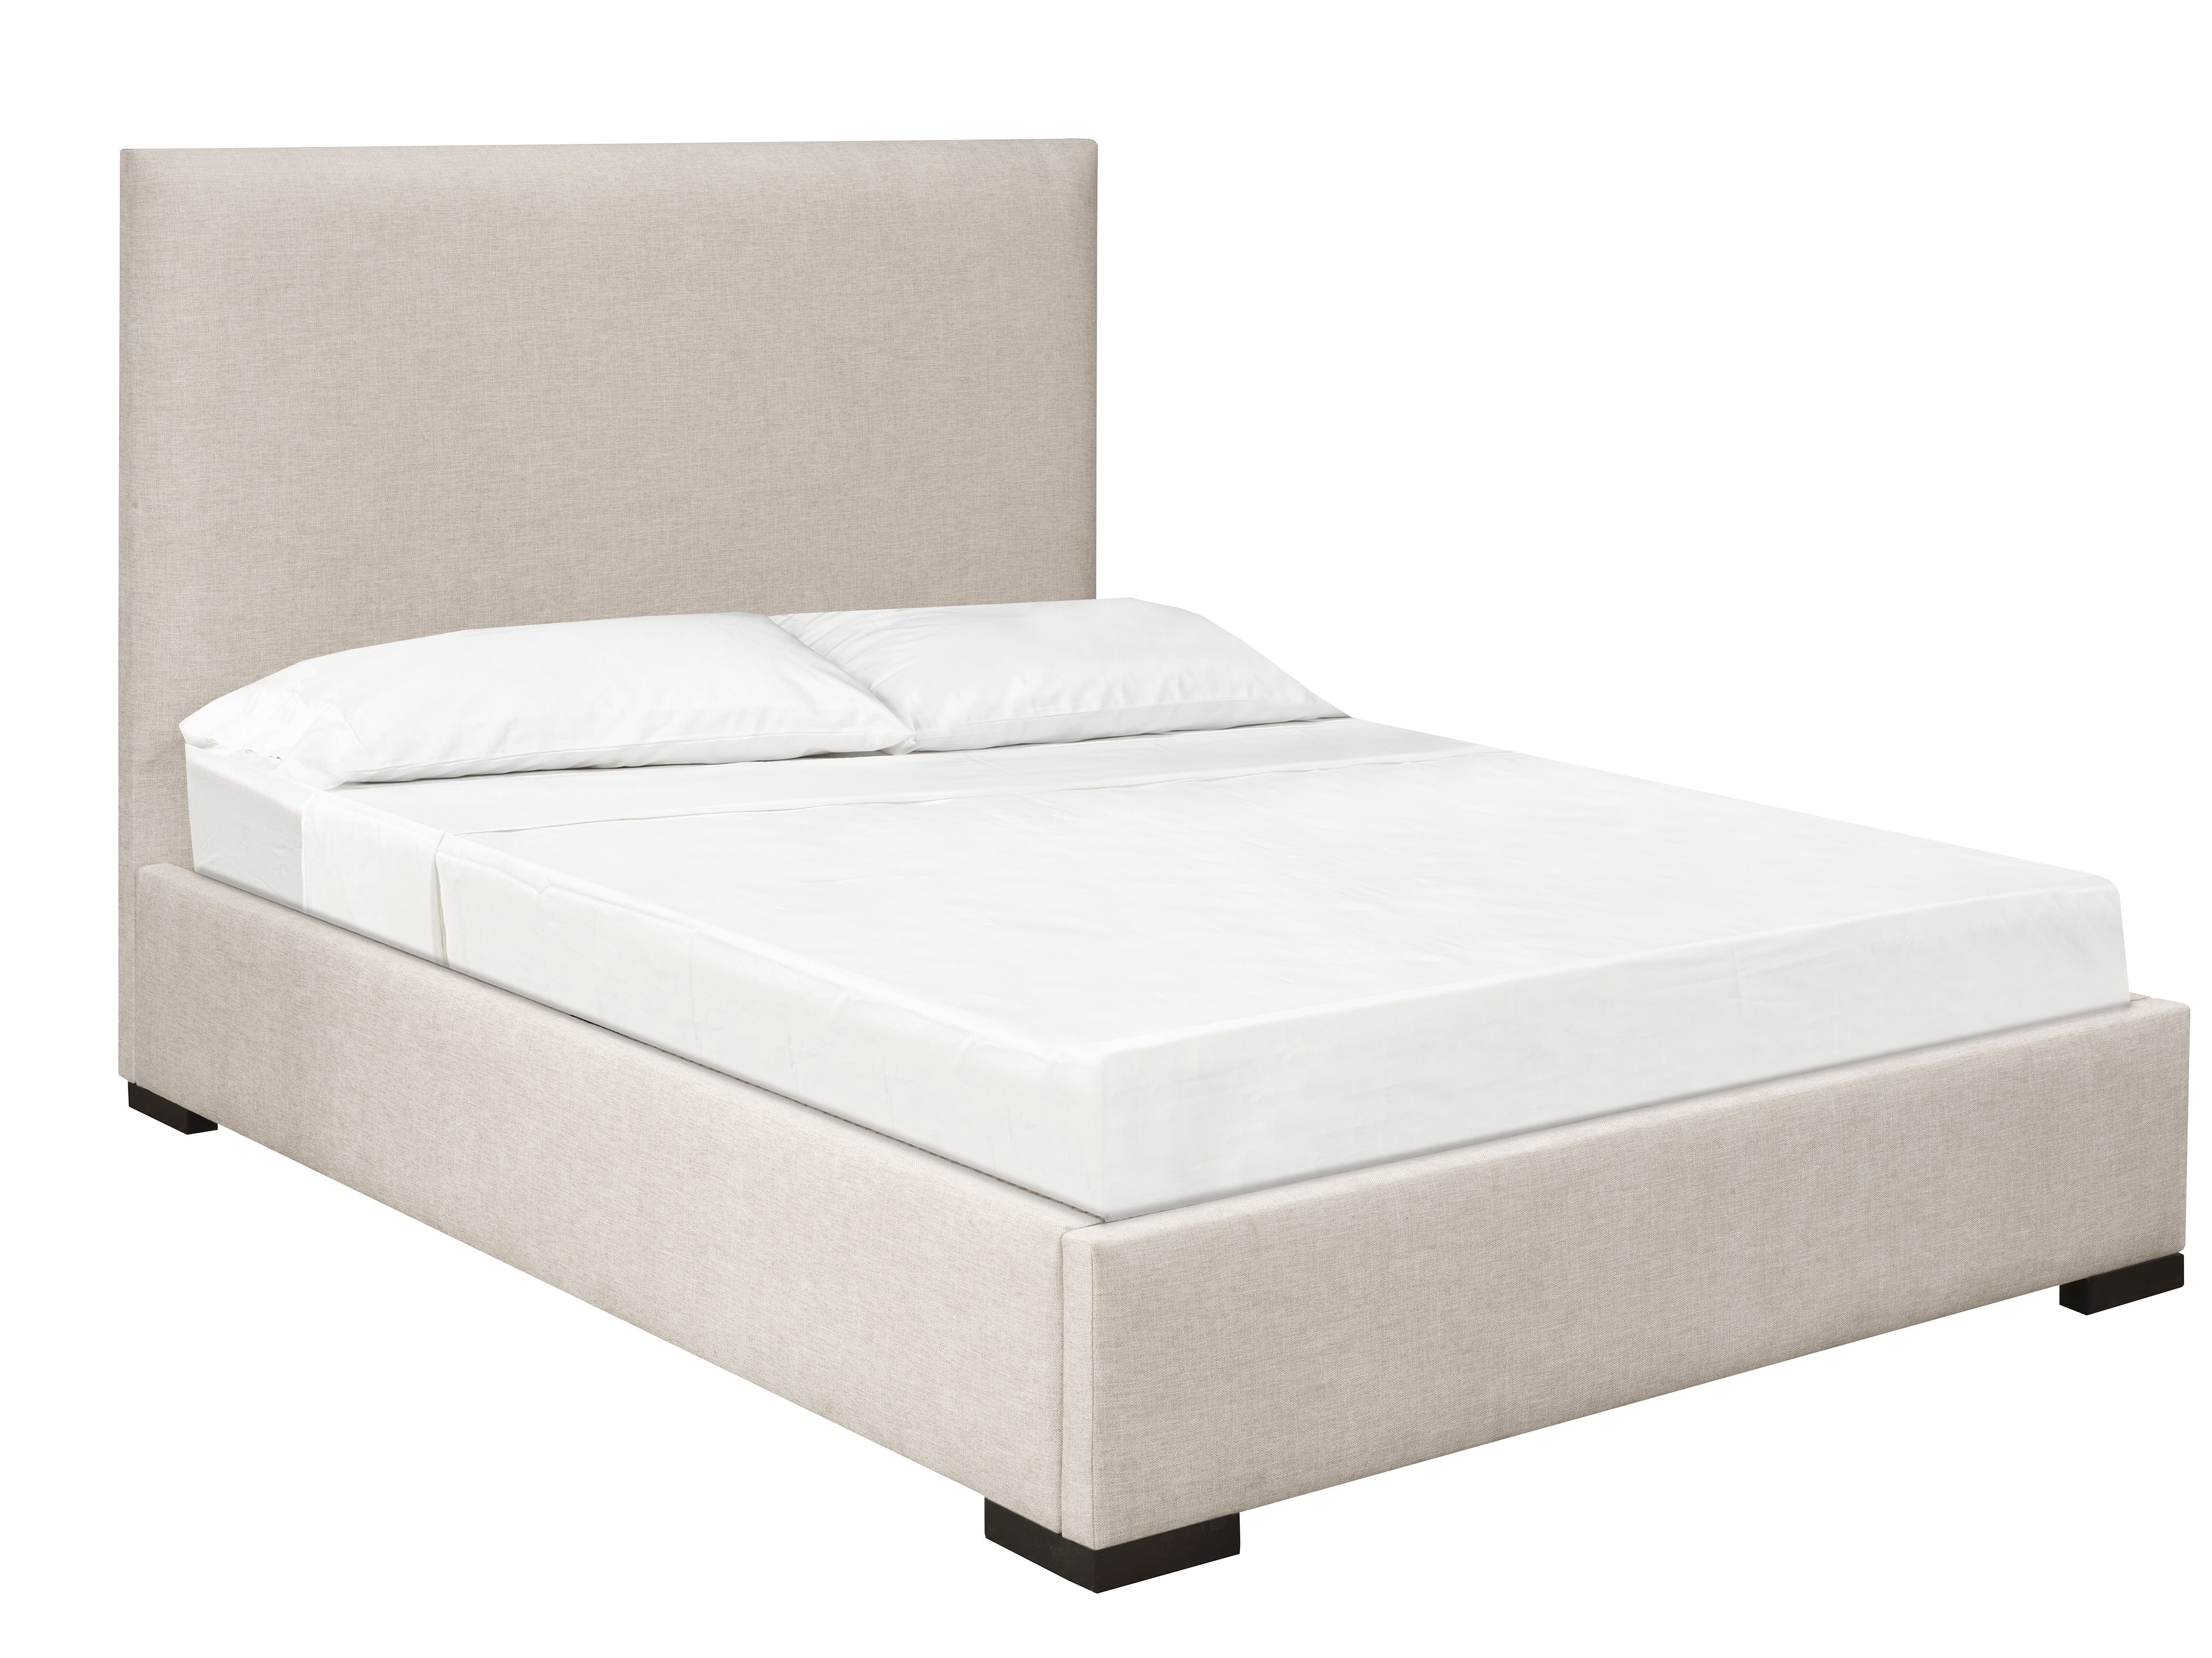 Sundre Platform Bed - Beige Linen - Canadian Furniture